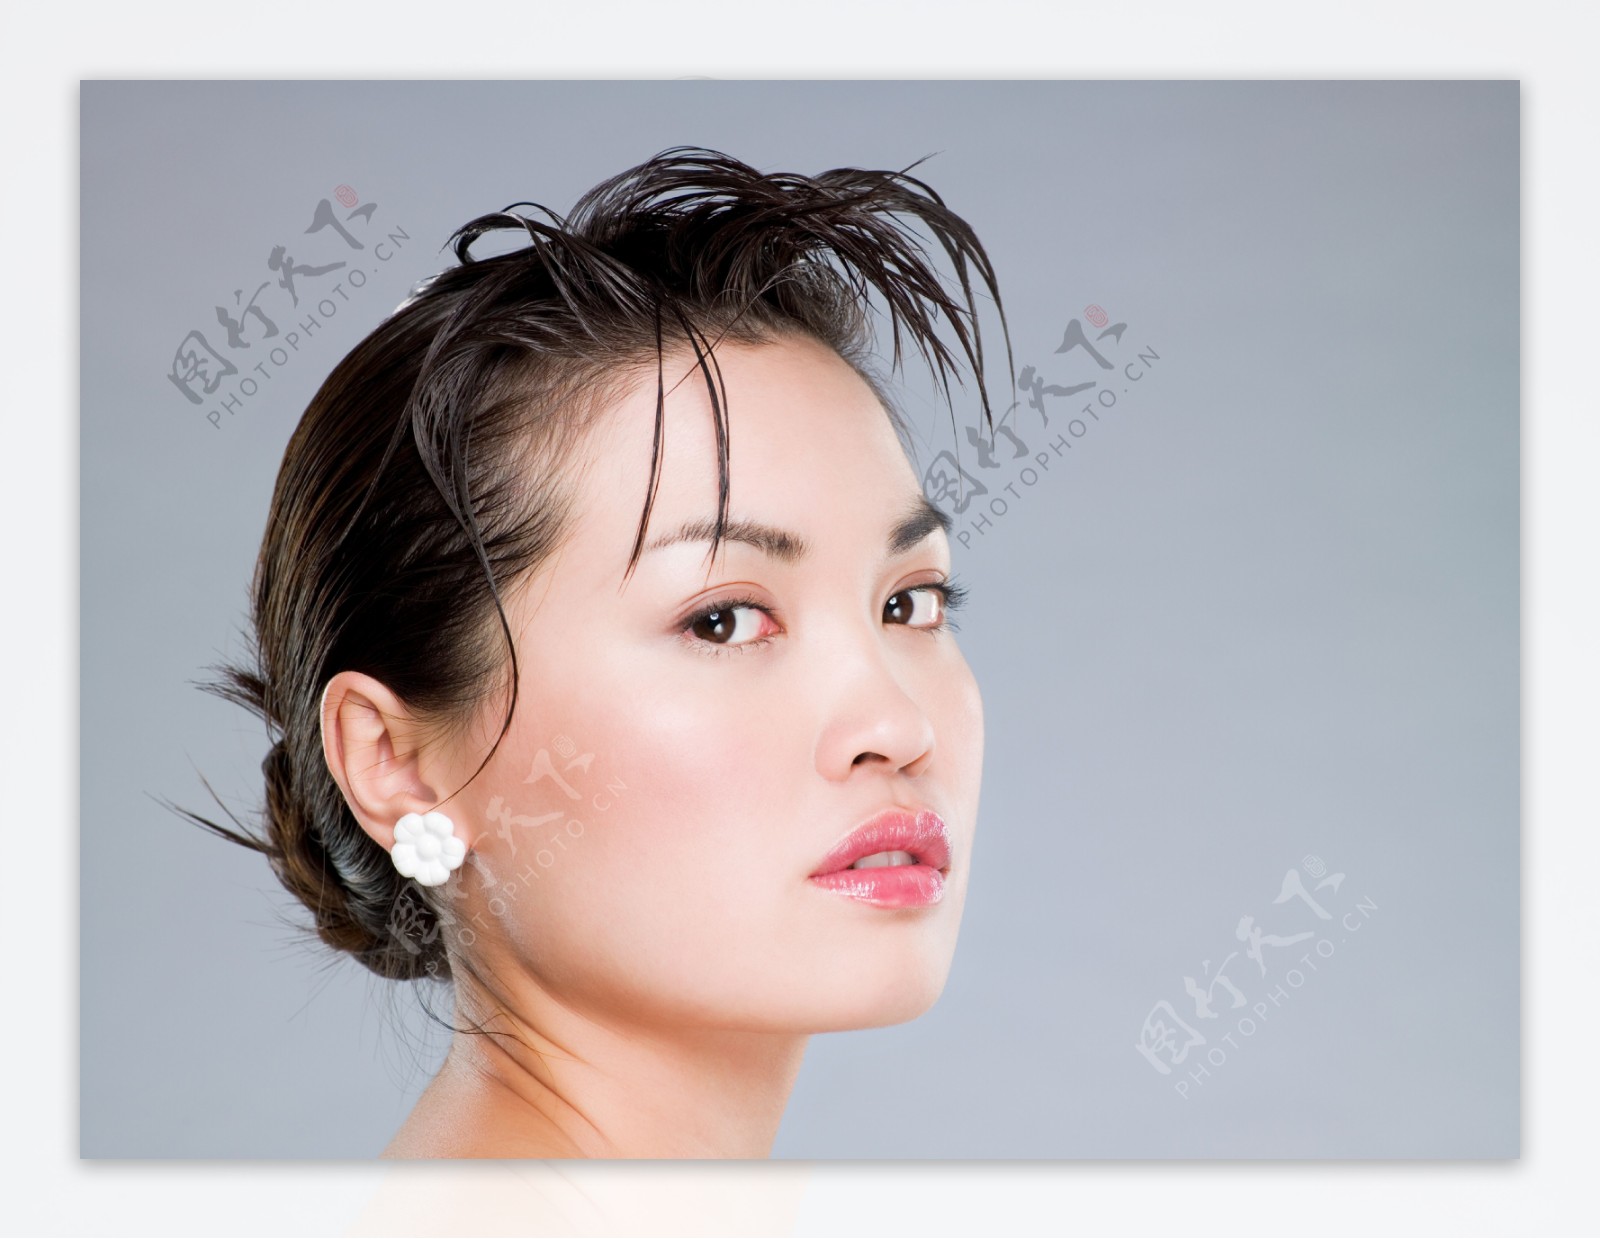 头发湿了的中国美女图片